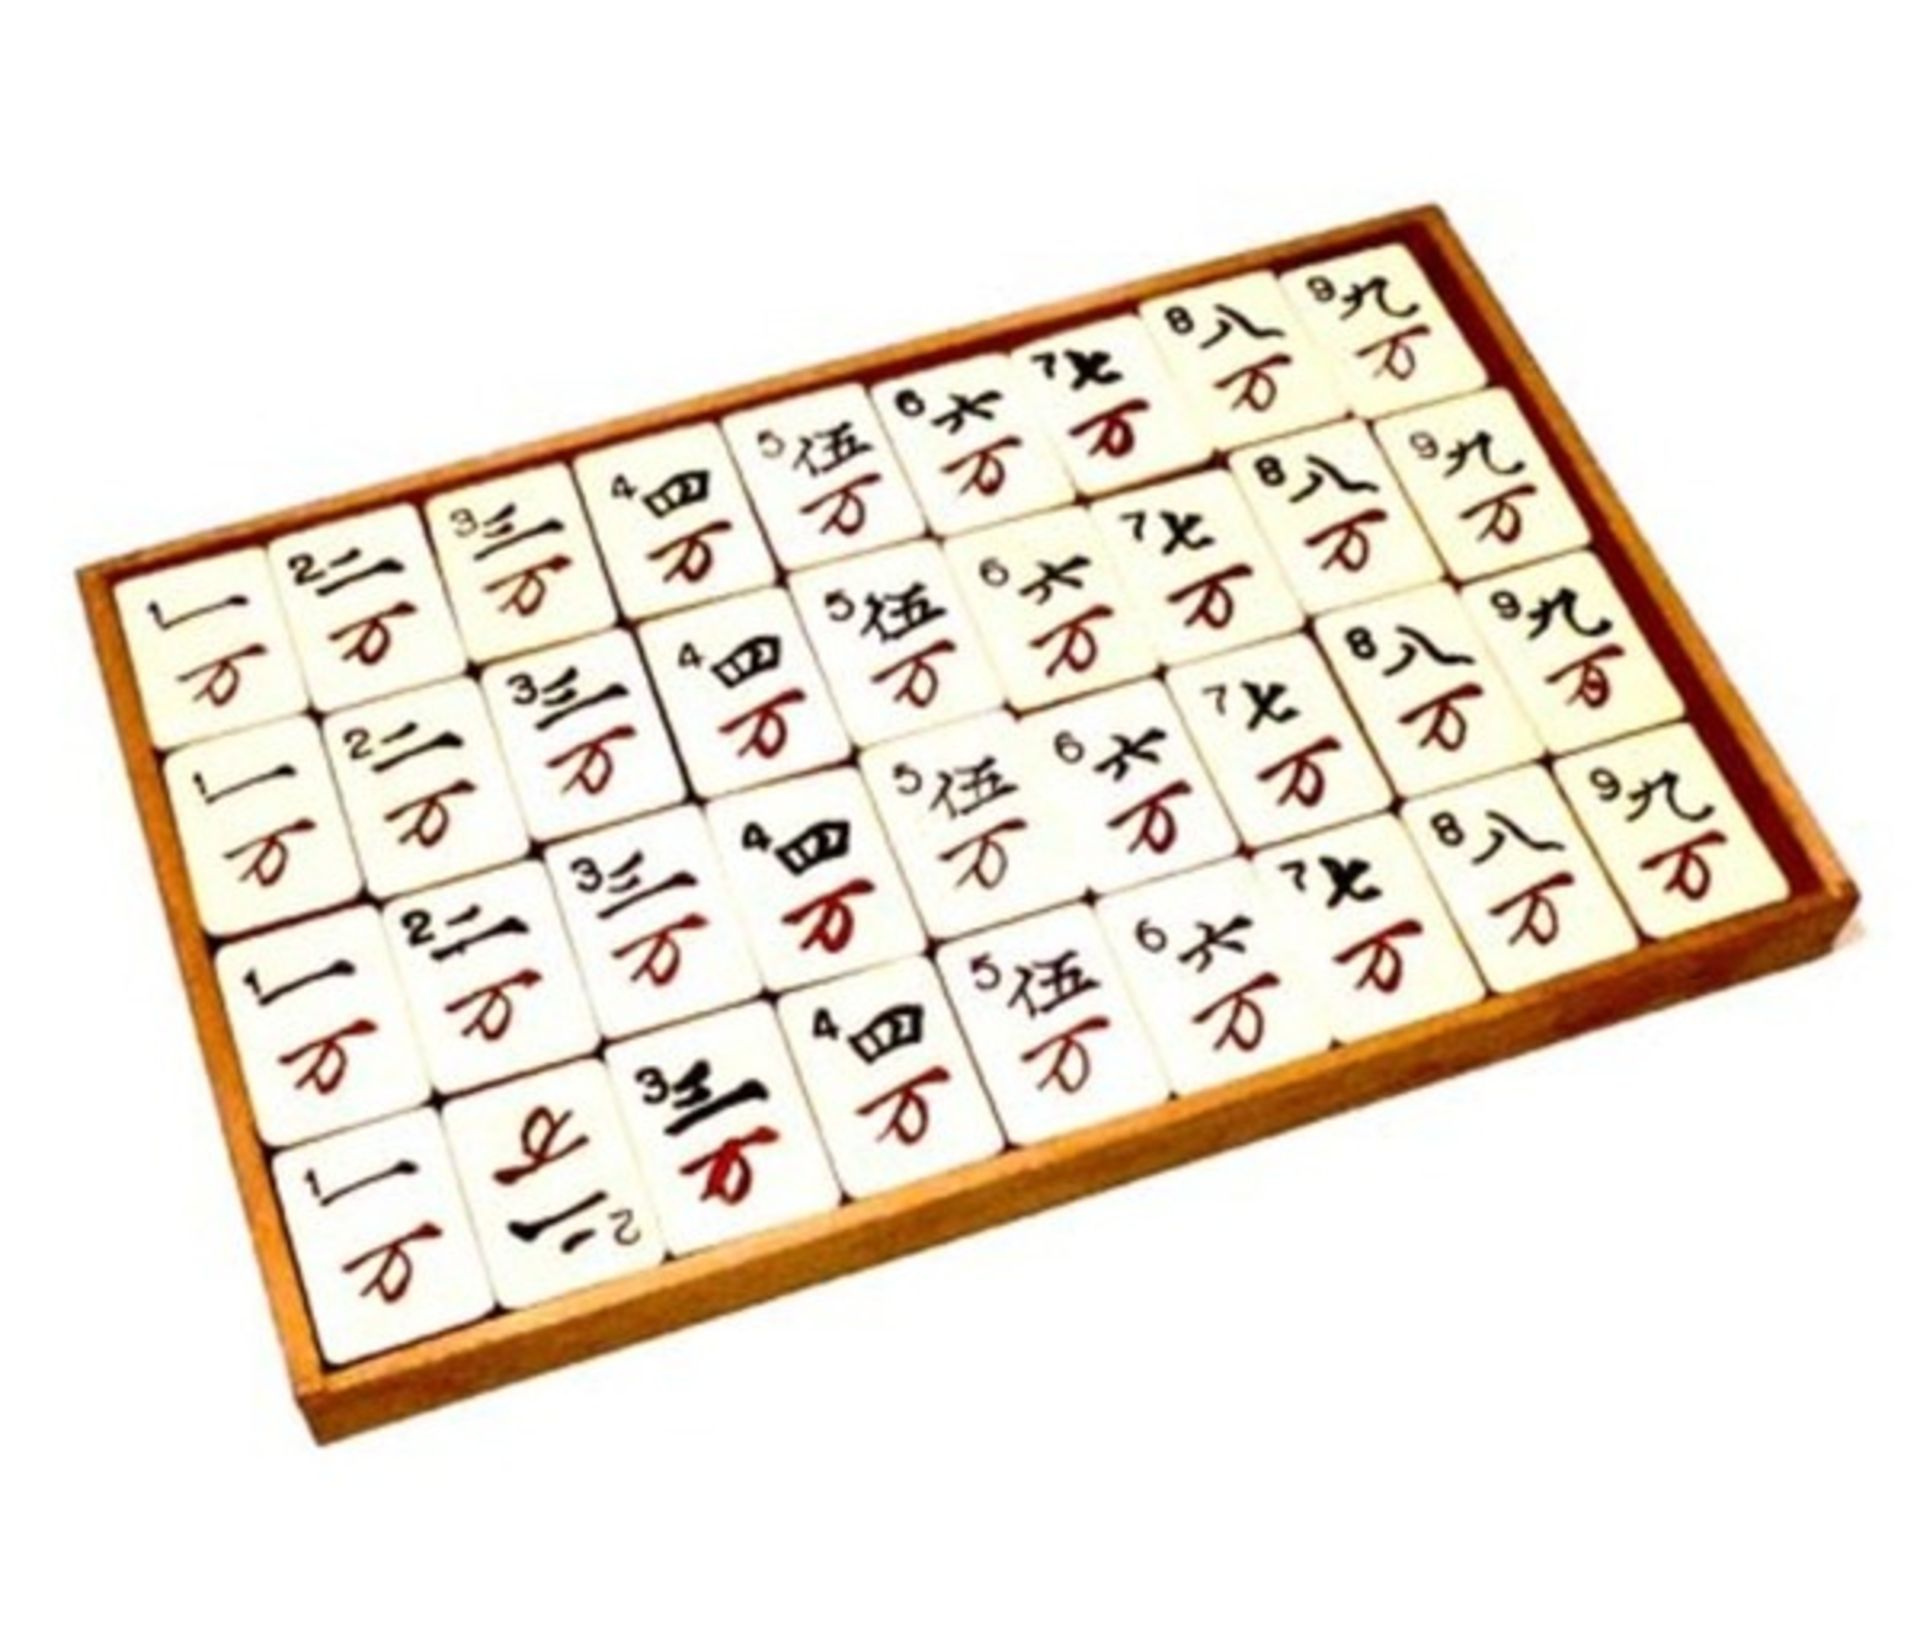 (Mahjong) Mahjong Europees, Golconda Duitsland, 1925 - Bild 8 aus 14